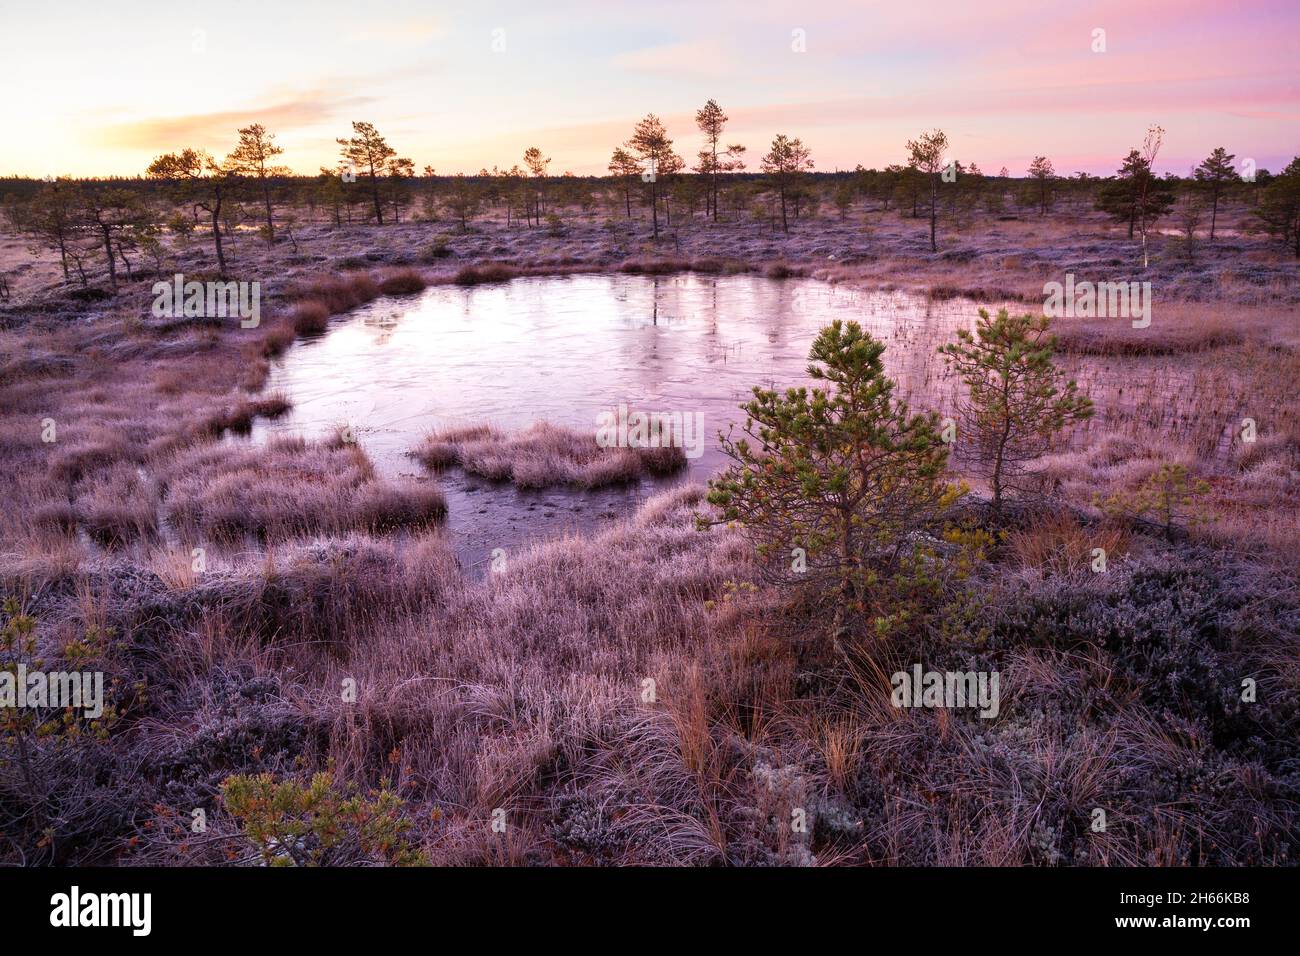 Une matinée calme et silencieuse avant le lever du soleil dans un paysage de tourbières estoniennes avec un petit lac de tourbières et un léger gel. Tourné à Kuresoo Bog, parc national de Soomaa. Banque D'Images